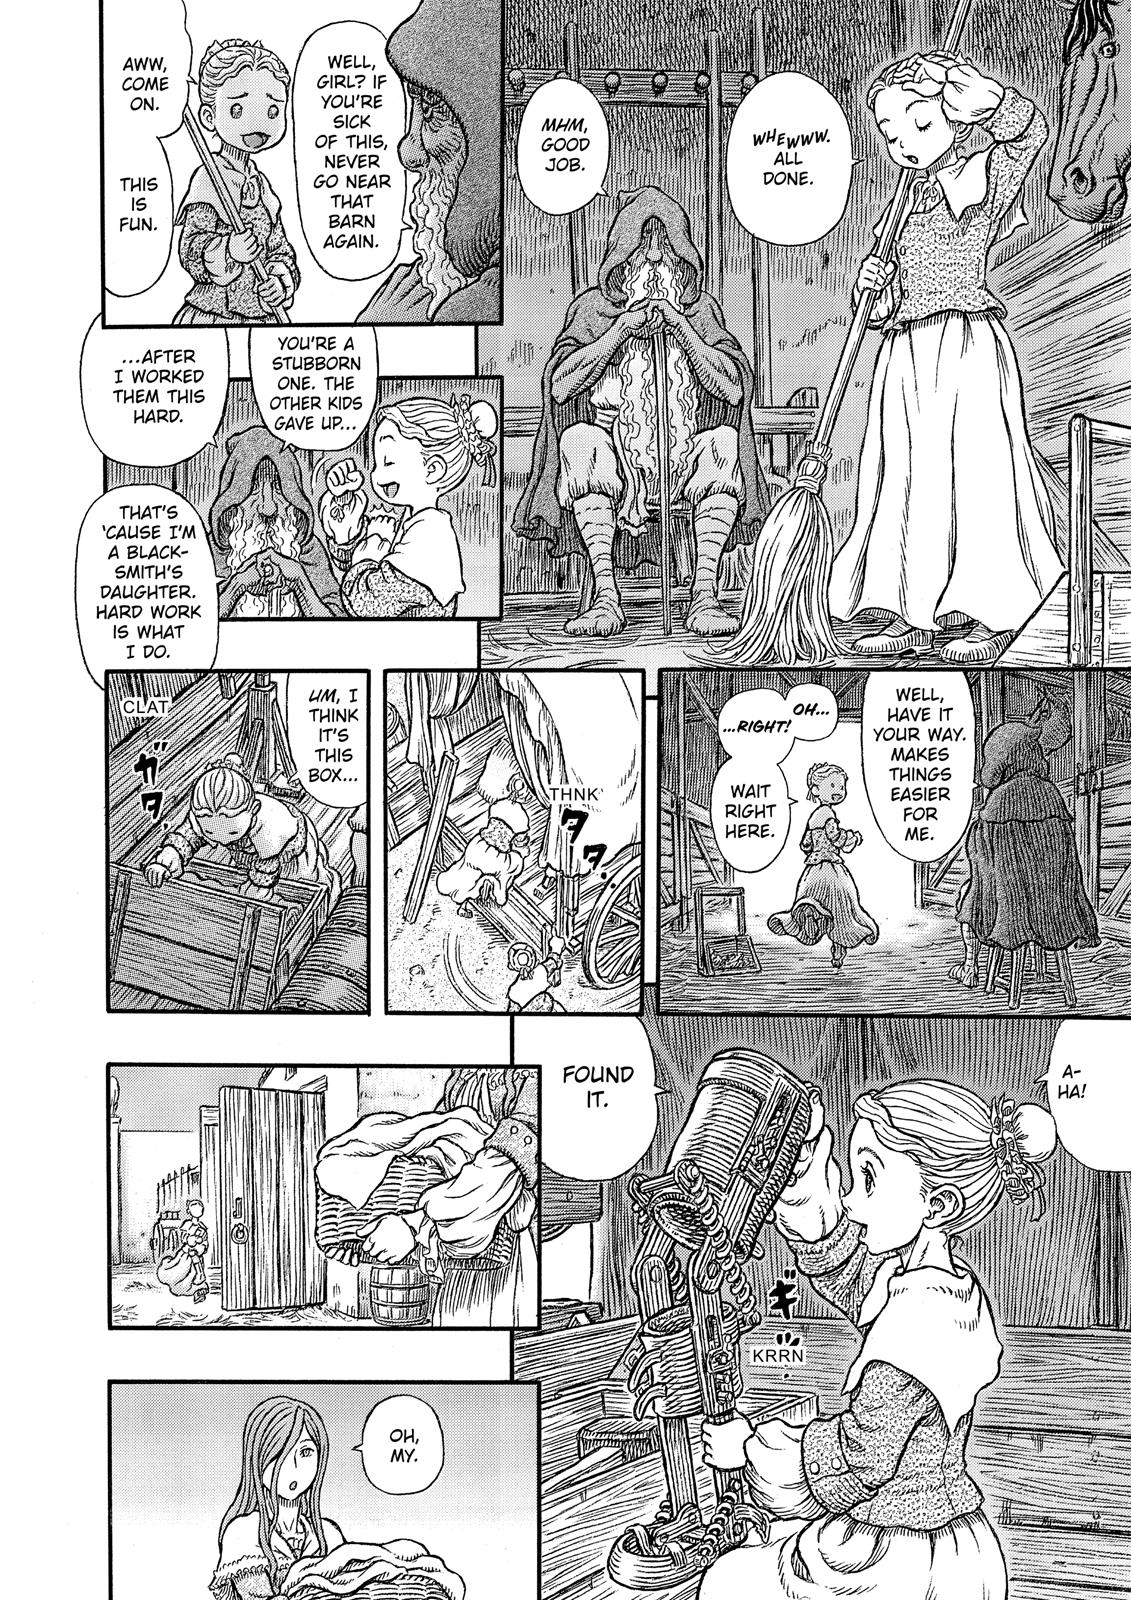 Berserk Manga Chapter 336 image 12